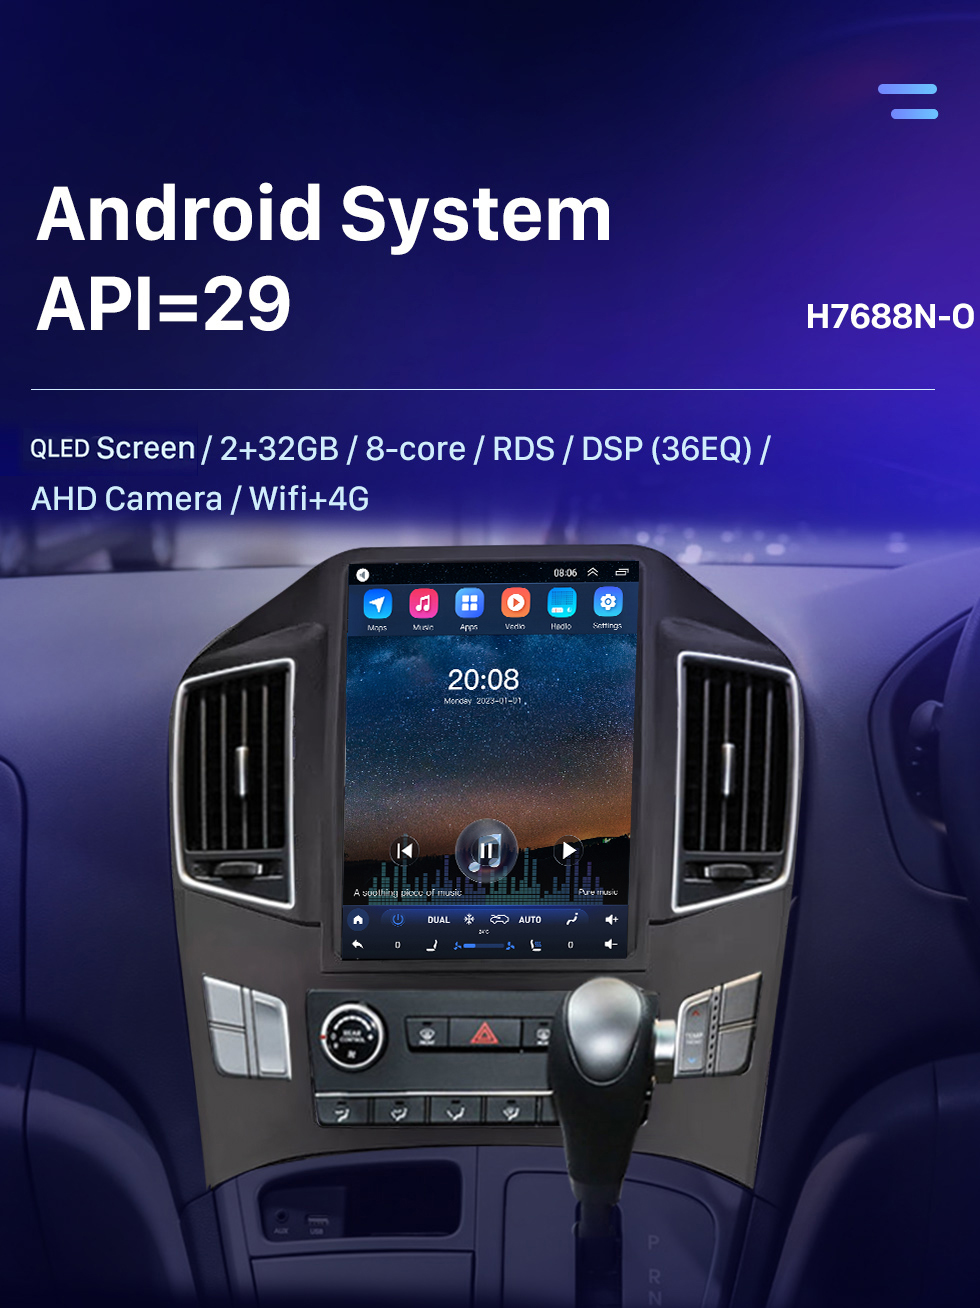 Seicane Tela sensível ao toque hd 9.7 polegadas android 10.0 para 2017 hyundai h1 sistema de navegação gps de rádio bluetooth suporte carplay câmera de backup dvr controle de volante tpms